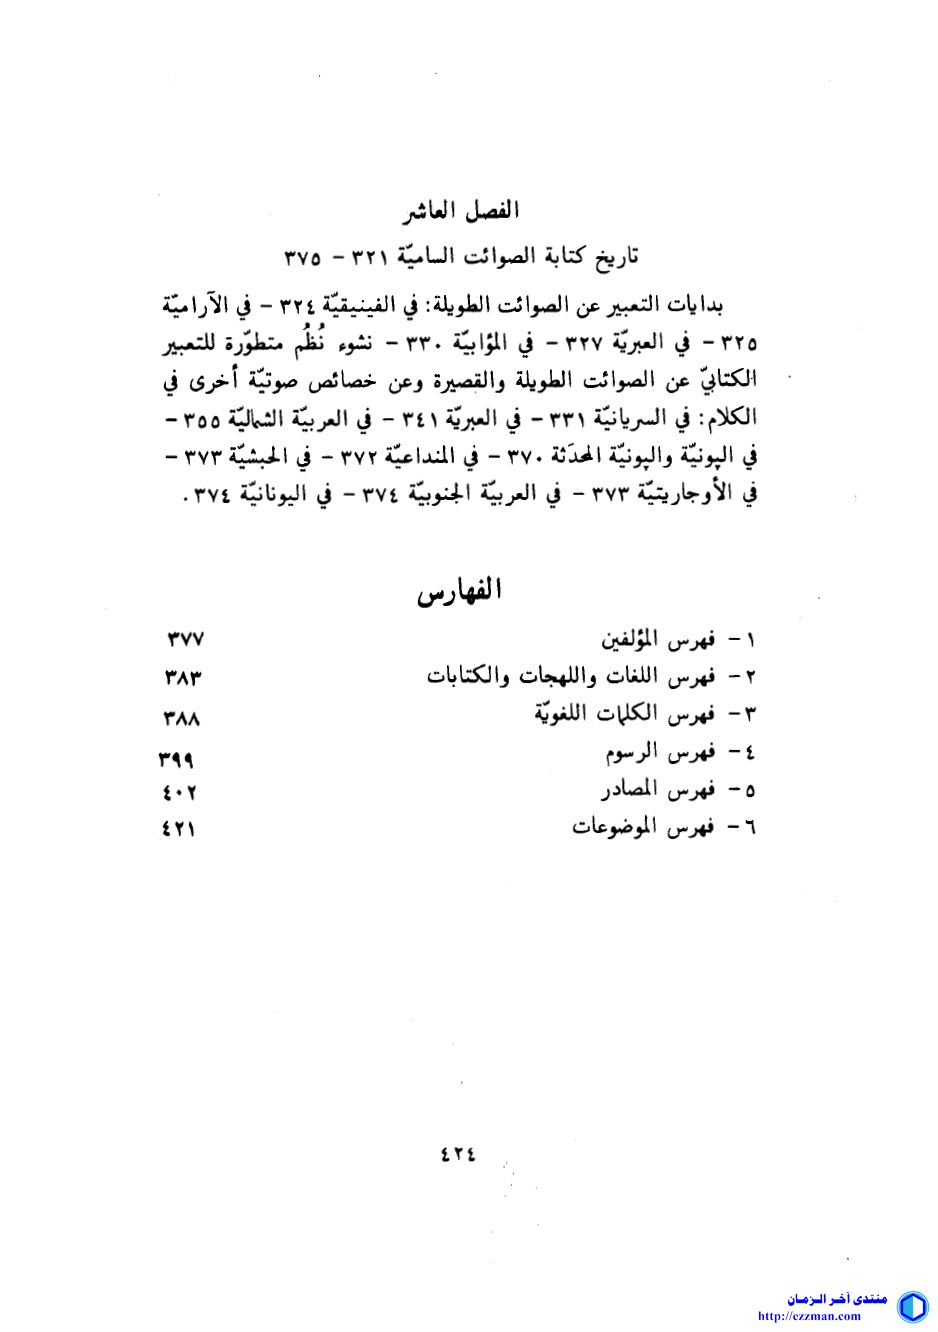 الكتابة العربية والسامية دراسات تاريخ